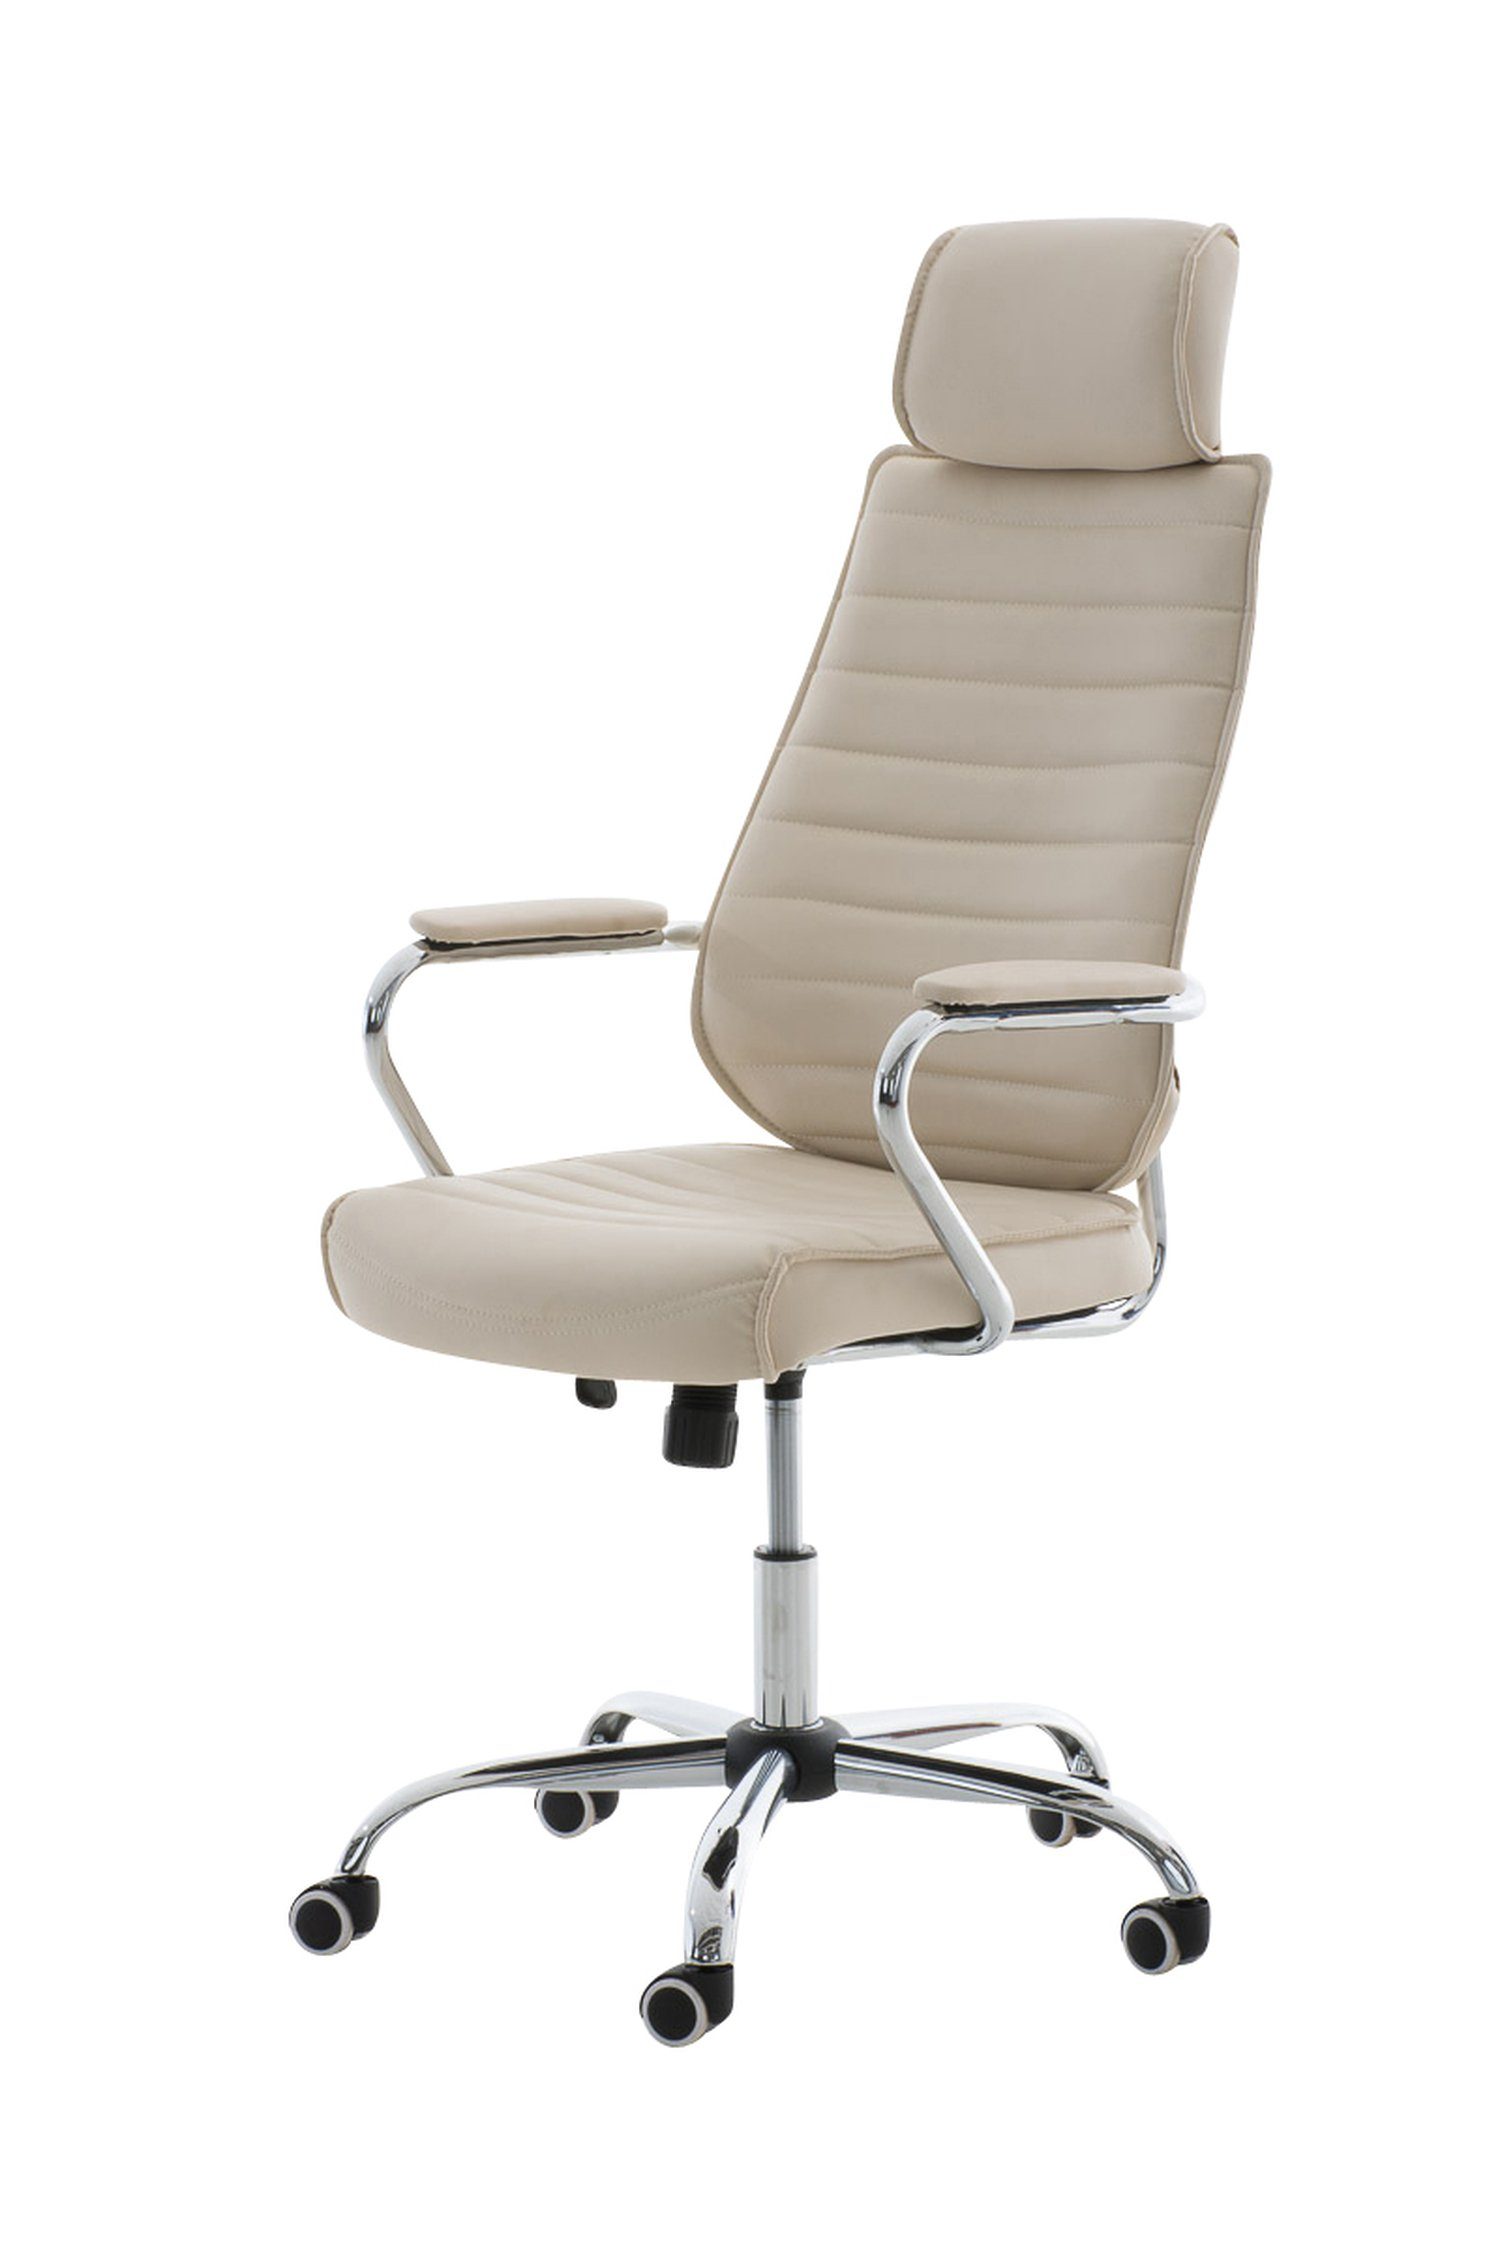 TPFLiving Bürostuhl Rocket V2 mit bequemer Rückenlehne - höhenverstellbar und 360° drehbar (Schreibtischstuhl, Drehstuhl, Chefsessel, Bürostuhl XXL), Gestell: Metall chrom - Sitz: Kunstleder creme